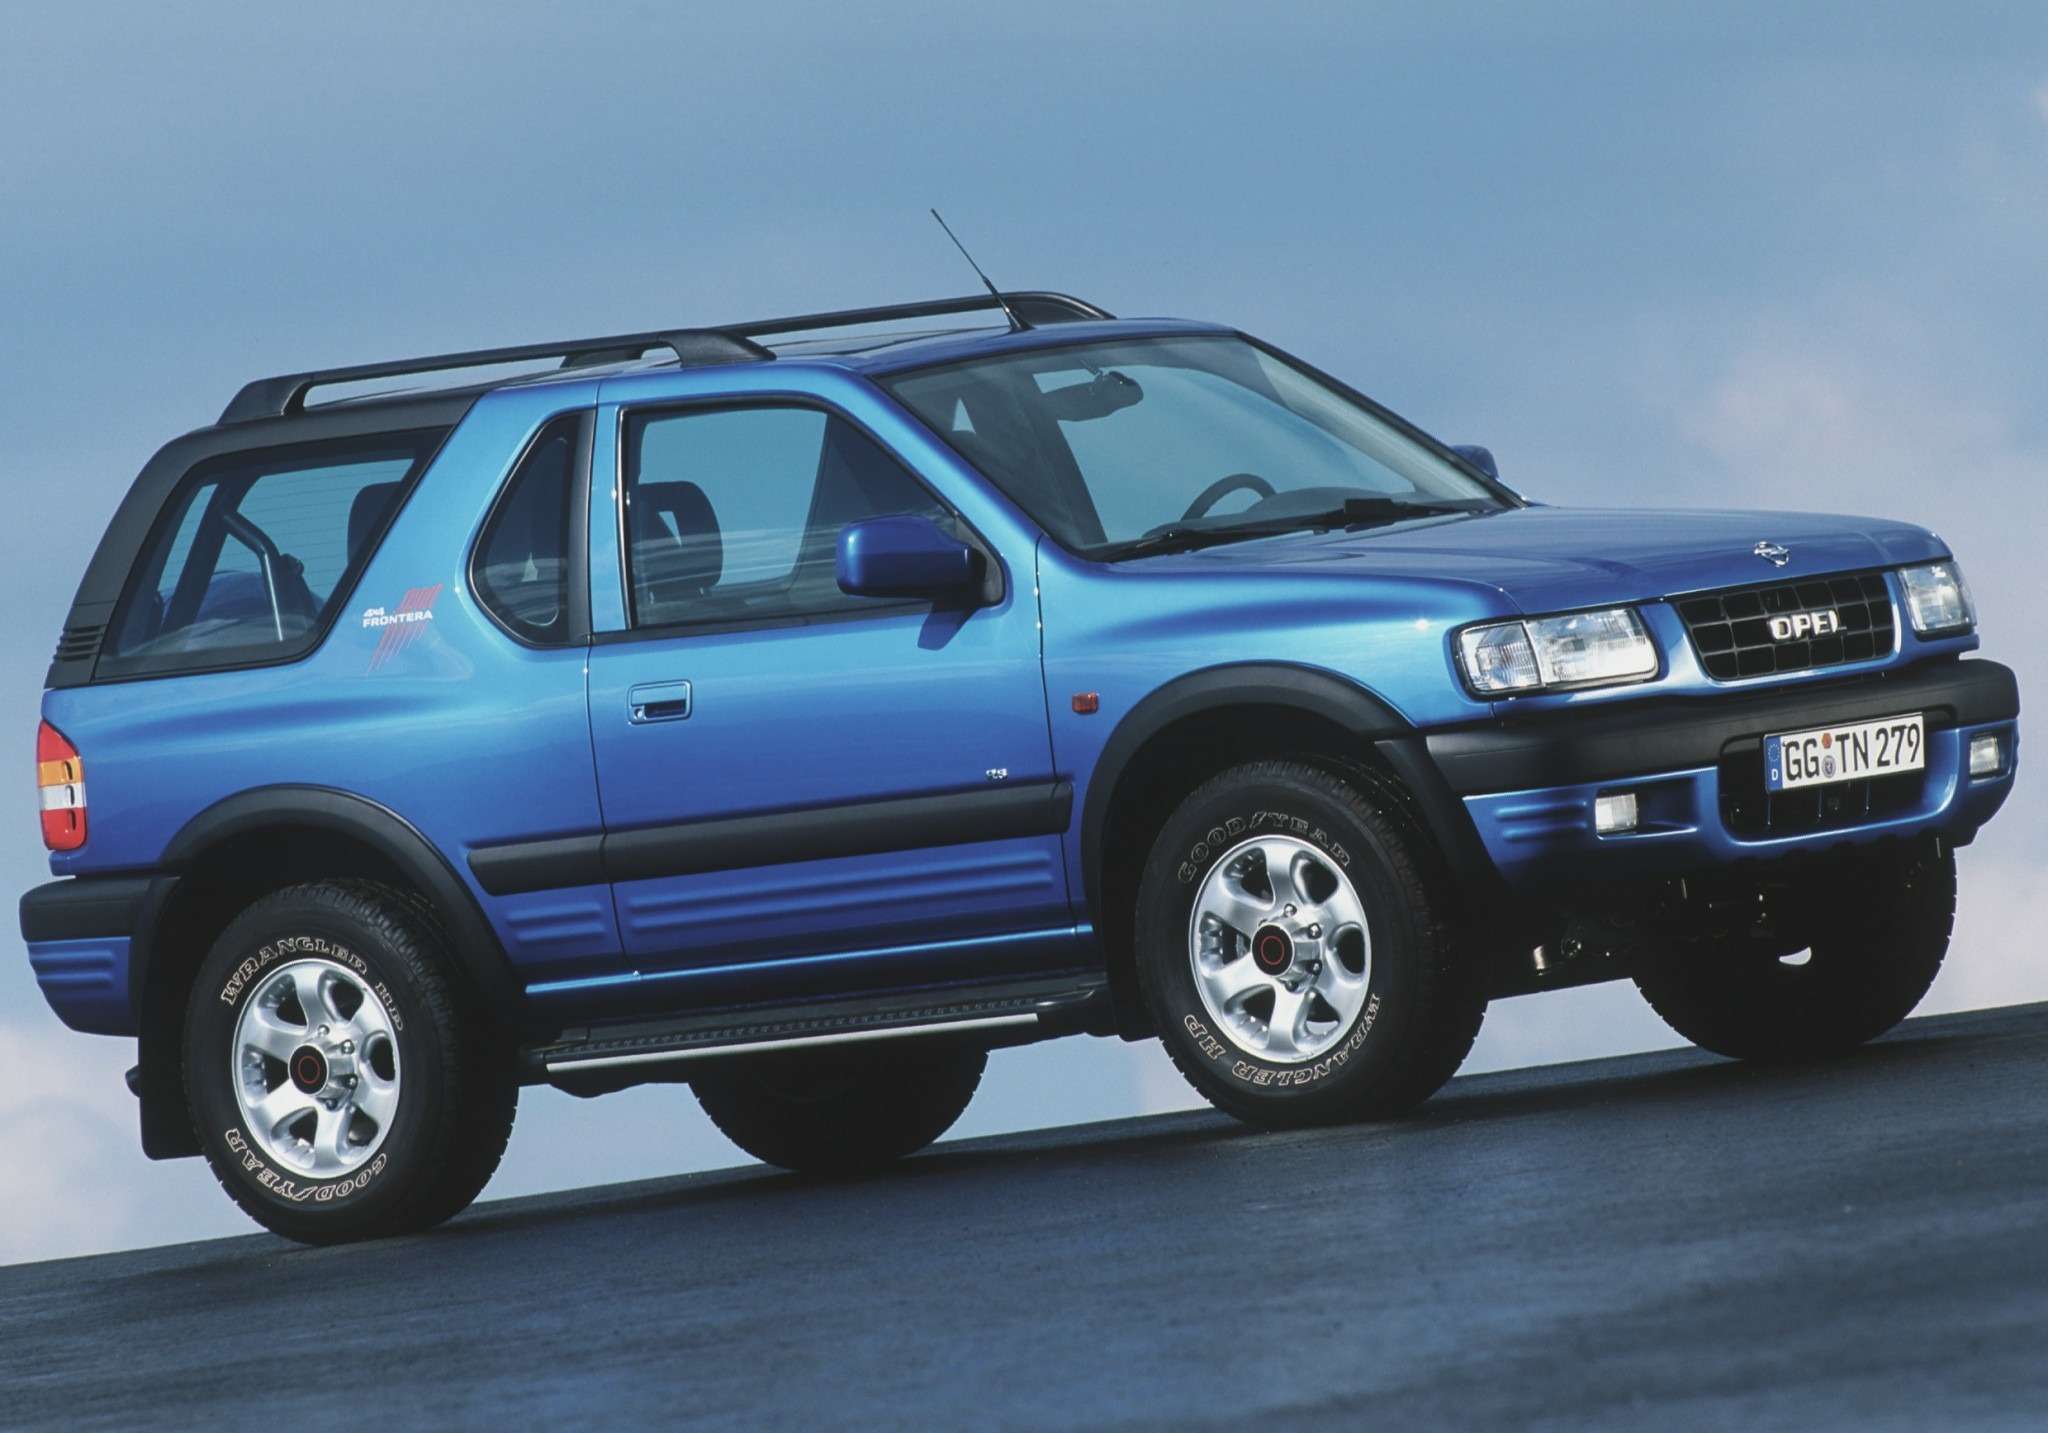  Первый SUV в истории Opel — Frontera, 1991 г. Для европейского рынка эту модель выпускали на заводе Bedford в английском городе Лутоне. 